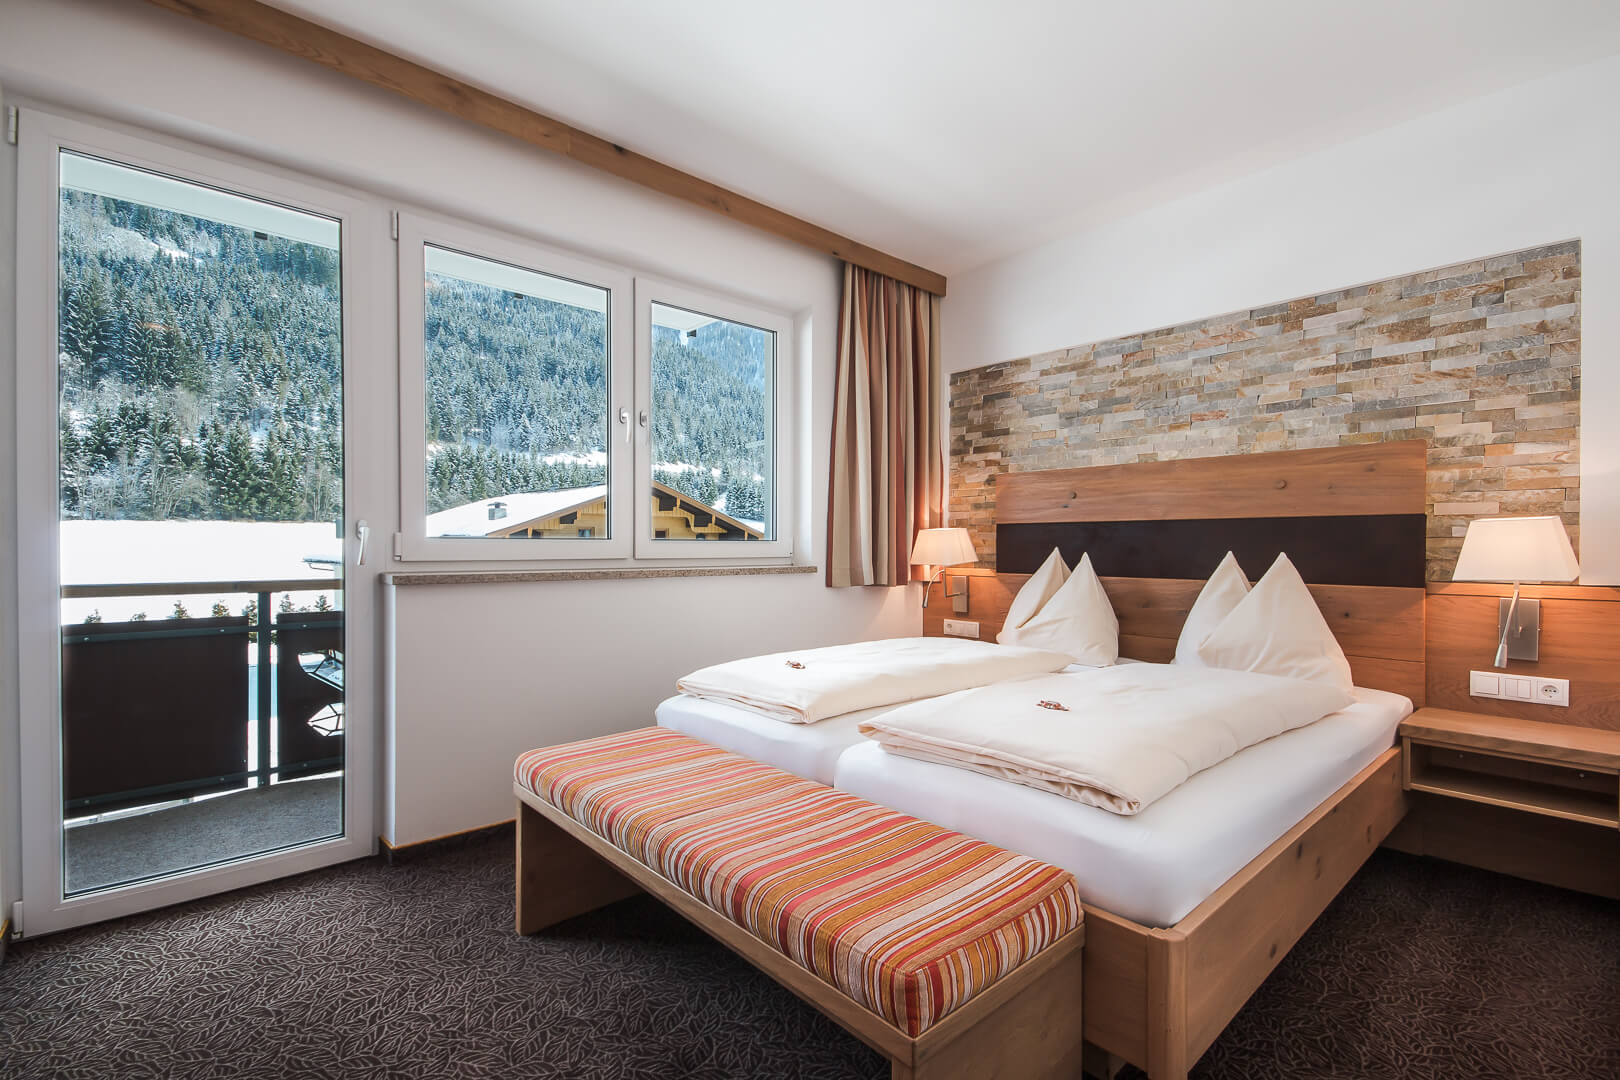 Familienzimmer im Hotel Alpenwelt in der Flachau.